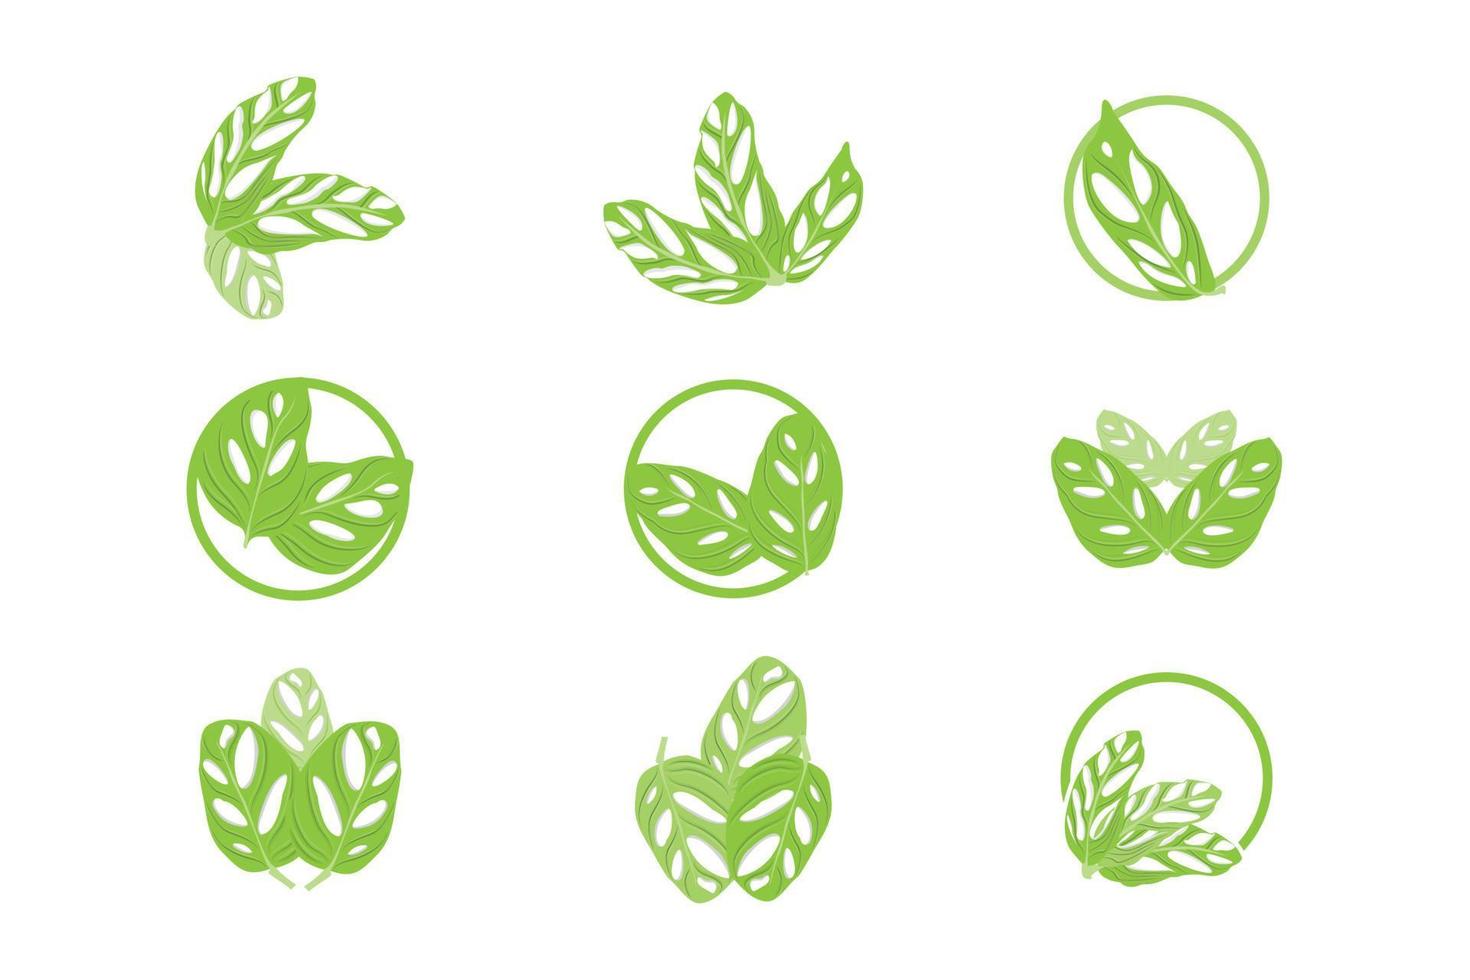 monstera adansonii blad logo, groen fabriek vector, boom vector, bijzonder blad illustratie vector